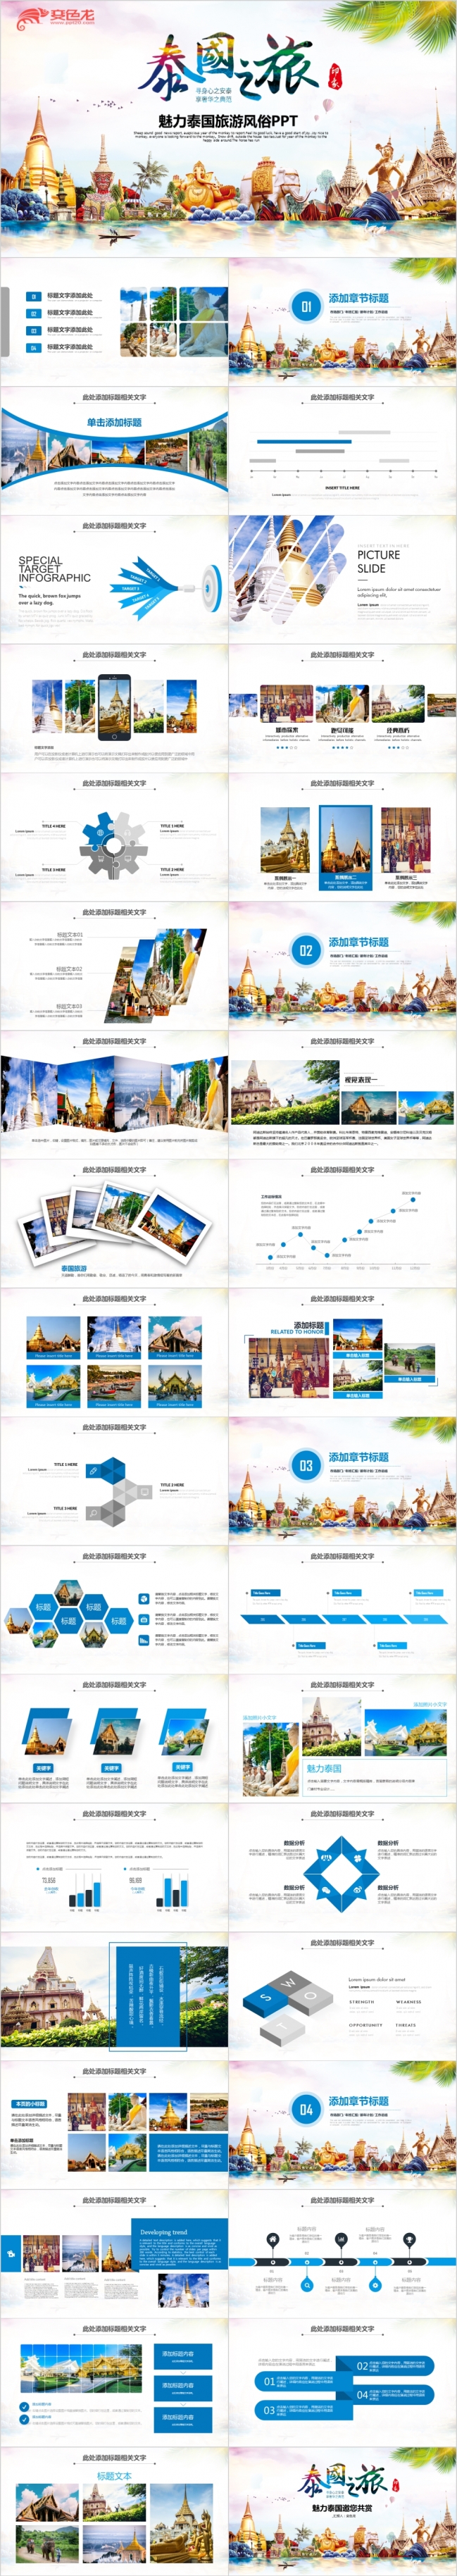 清晰动感泰国旅游文化泰国风景曼谷旅游PPT模板